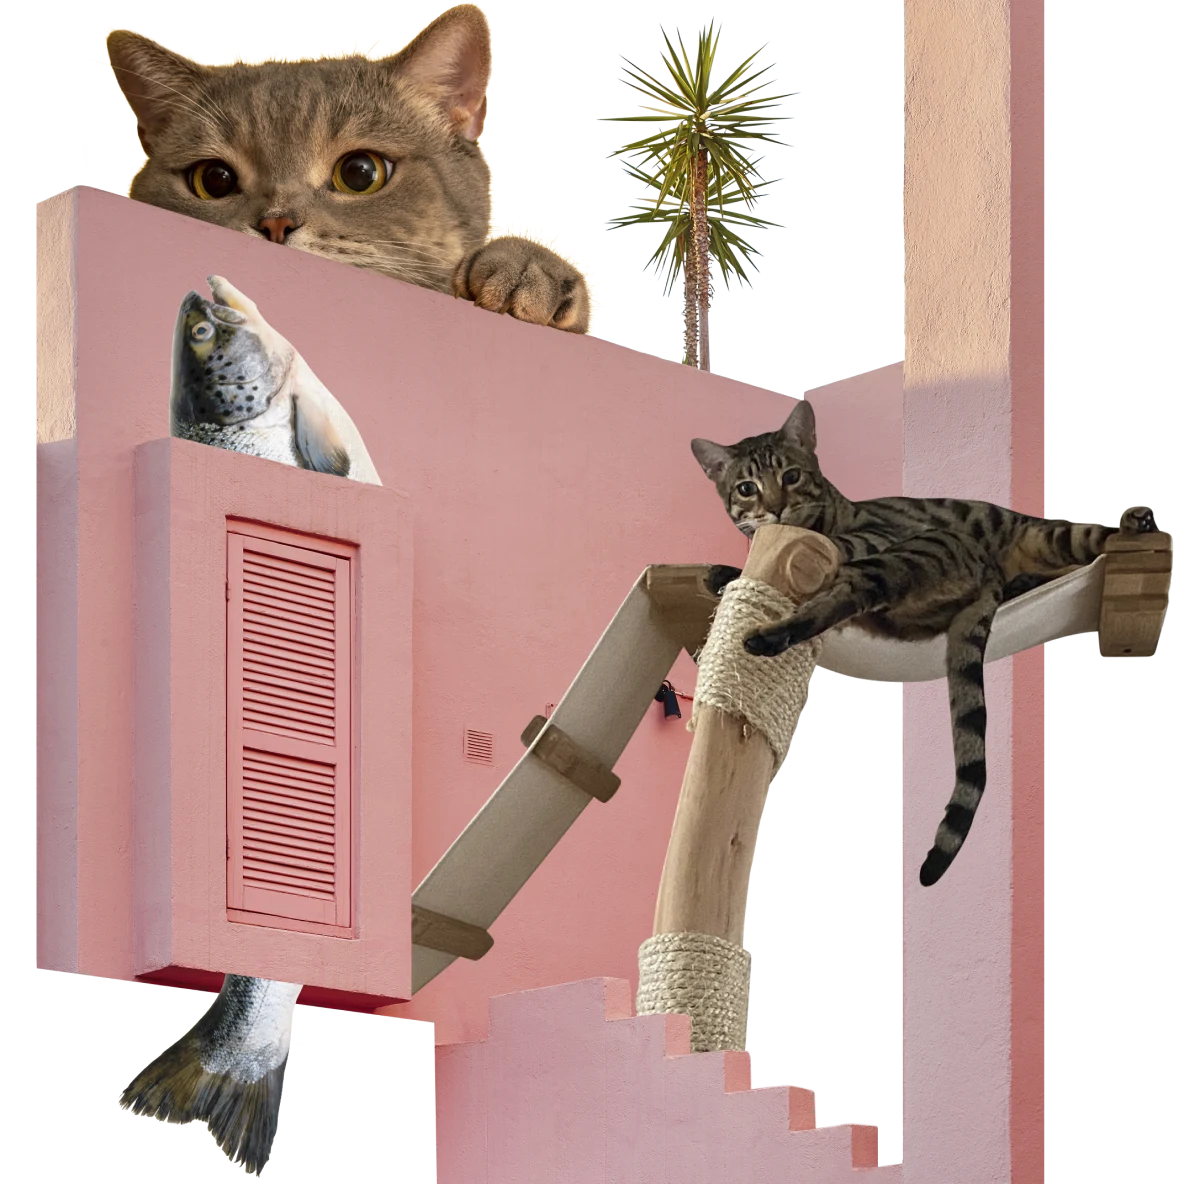 Die Außenfassade eines rosafarbenen Gebäudes mit geschlossenen Fensterläden, aus denen oben ein Fischkopf und unten die Schwanzflosse des Fisches hervorschauen. Rechts liegt eine getigerte Katze auf einer kleinen Hängematte in einem Kratzbaum. Oben blickt eine überdimensionale graue Katze über das rosafarbene Gebäude.